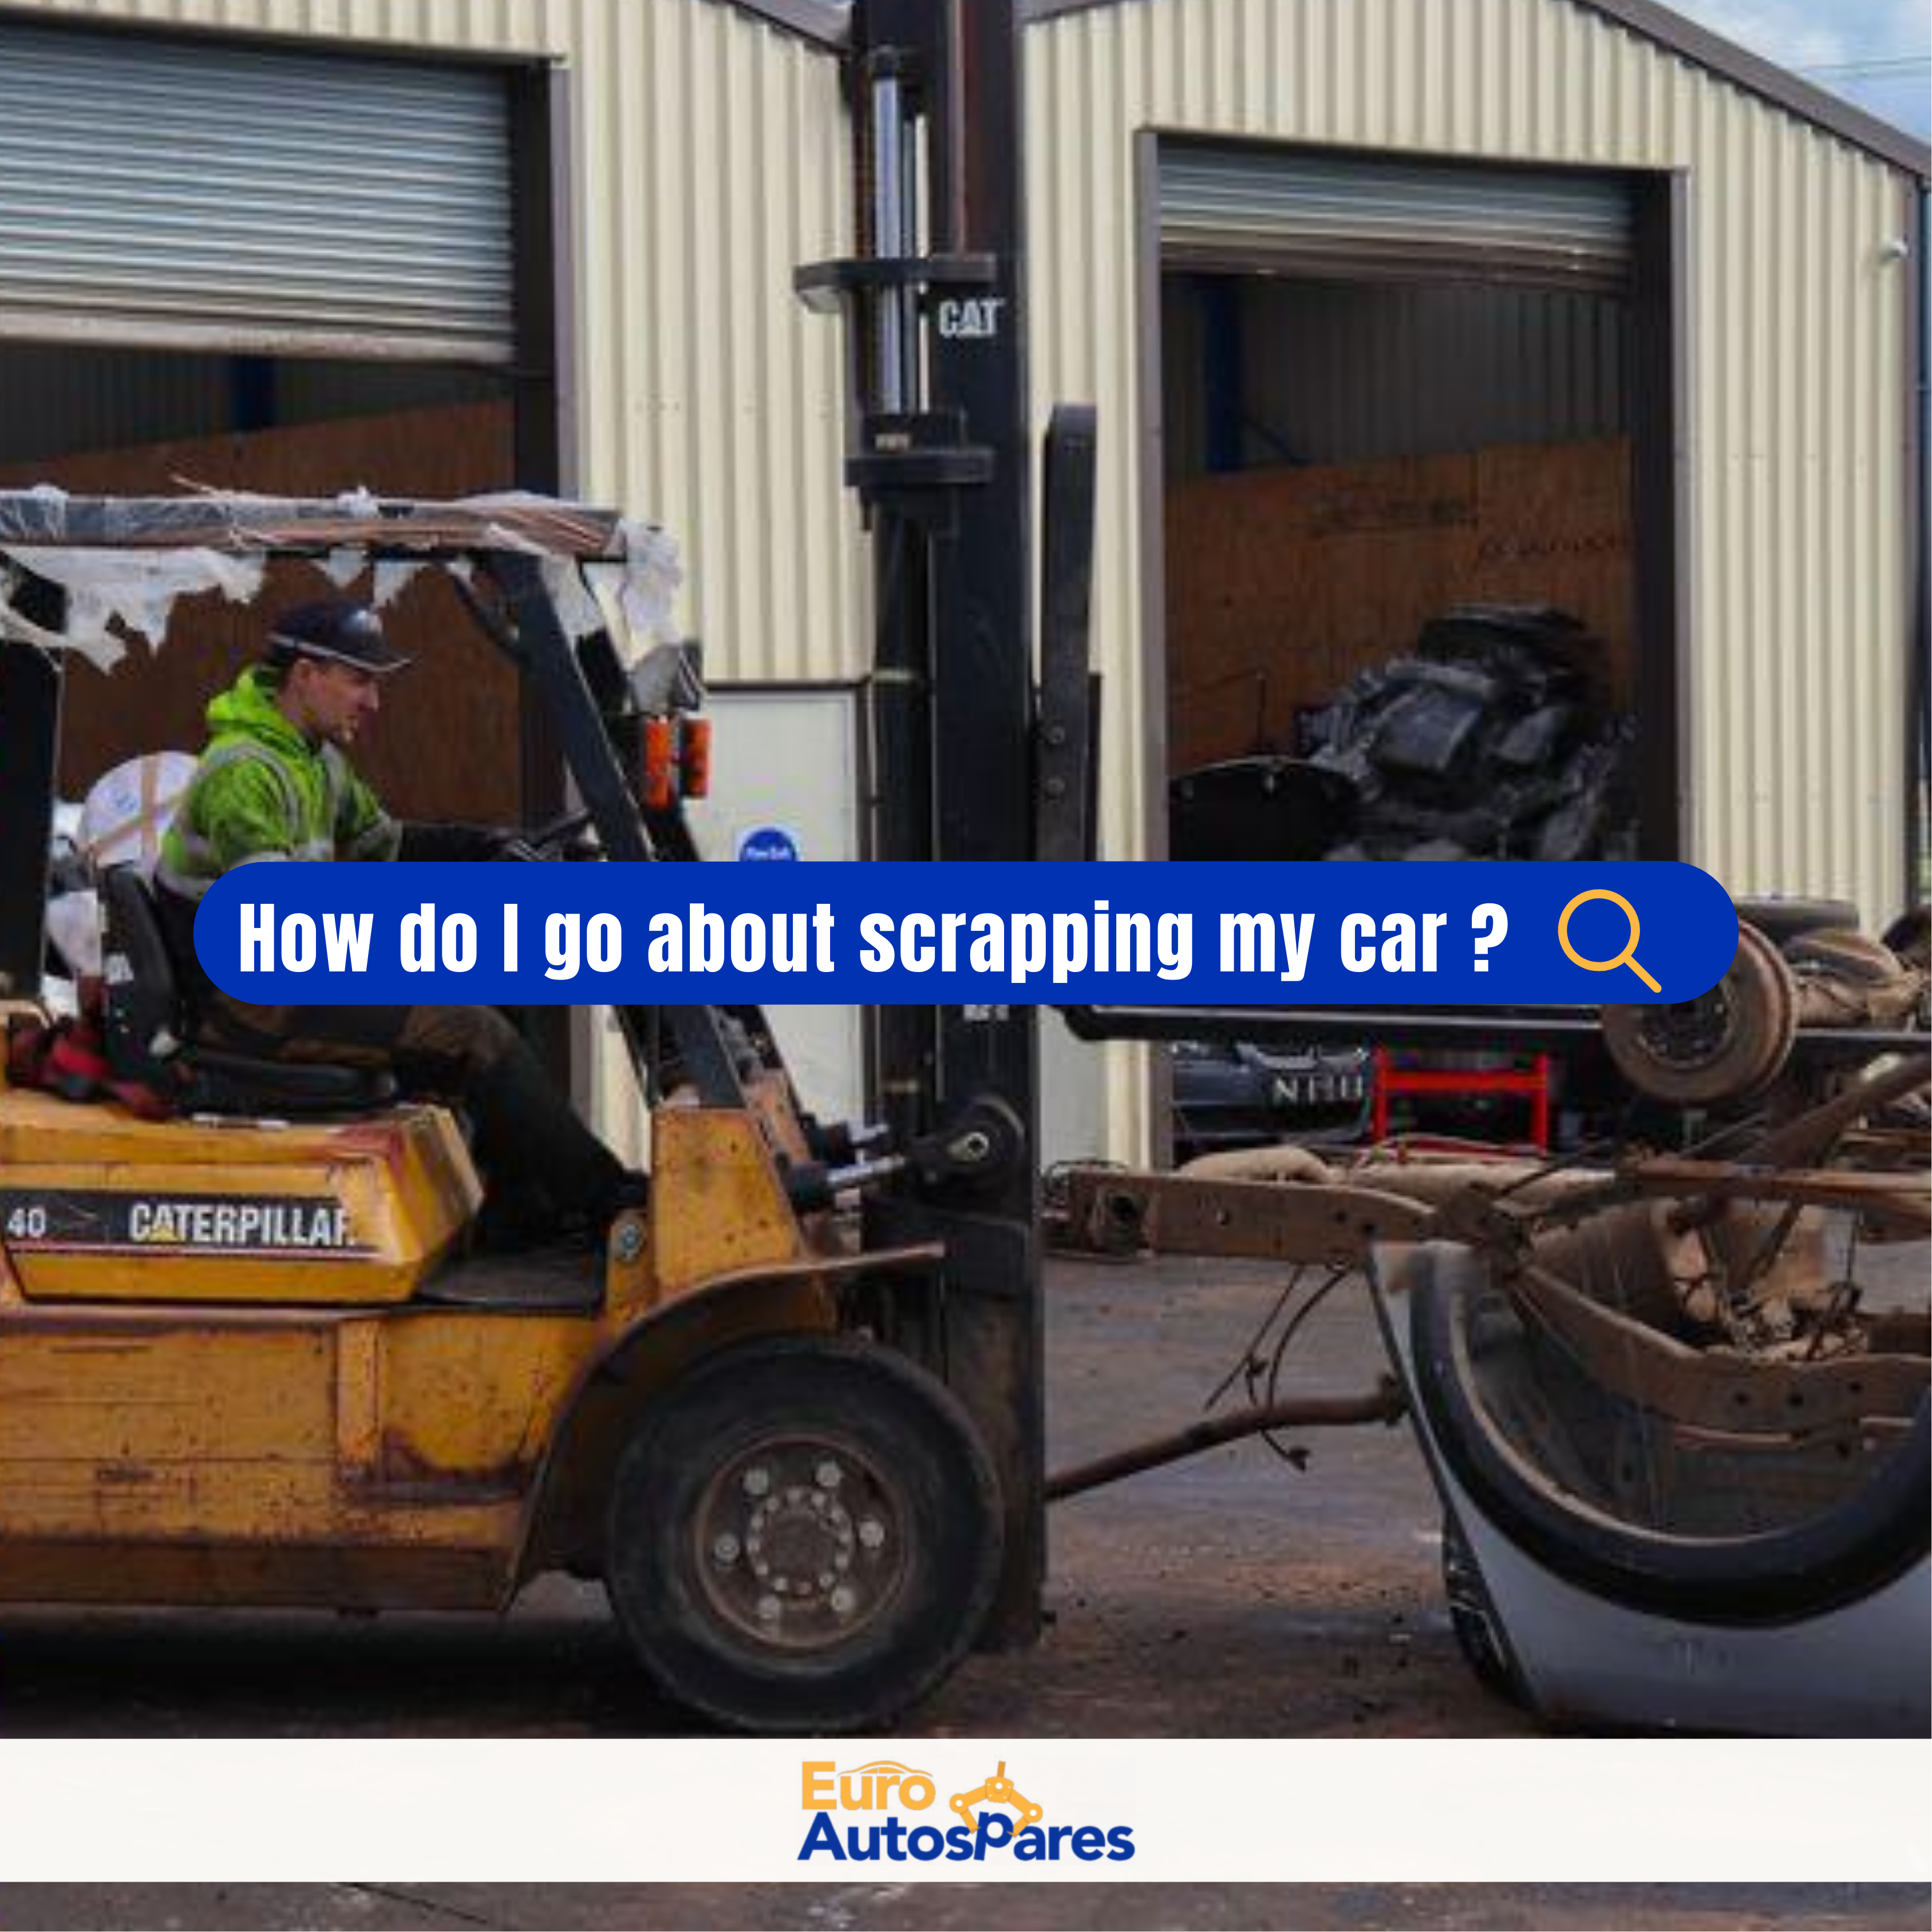 How do I scrap my car?